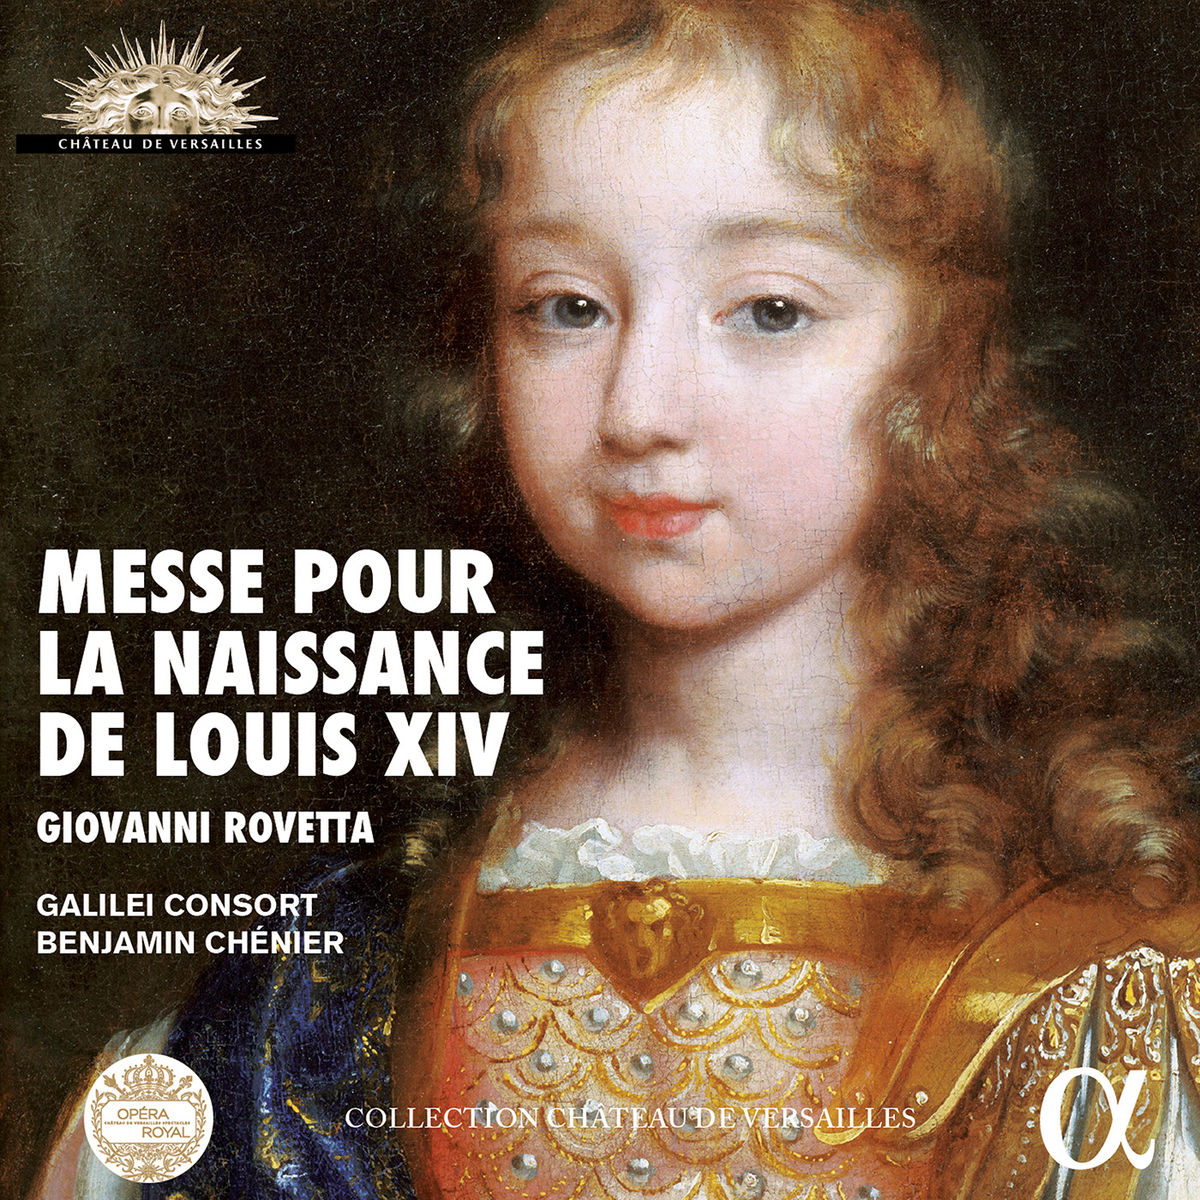 Galilei Consort & Benjamin Chenier - Rovetta: Messe pour la naissance de Louis XIV (2016) [Qobuz FLAC 24bit/96kHz]